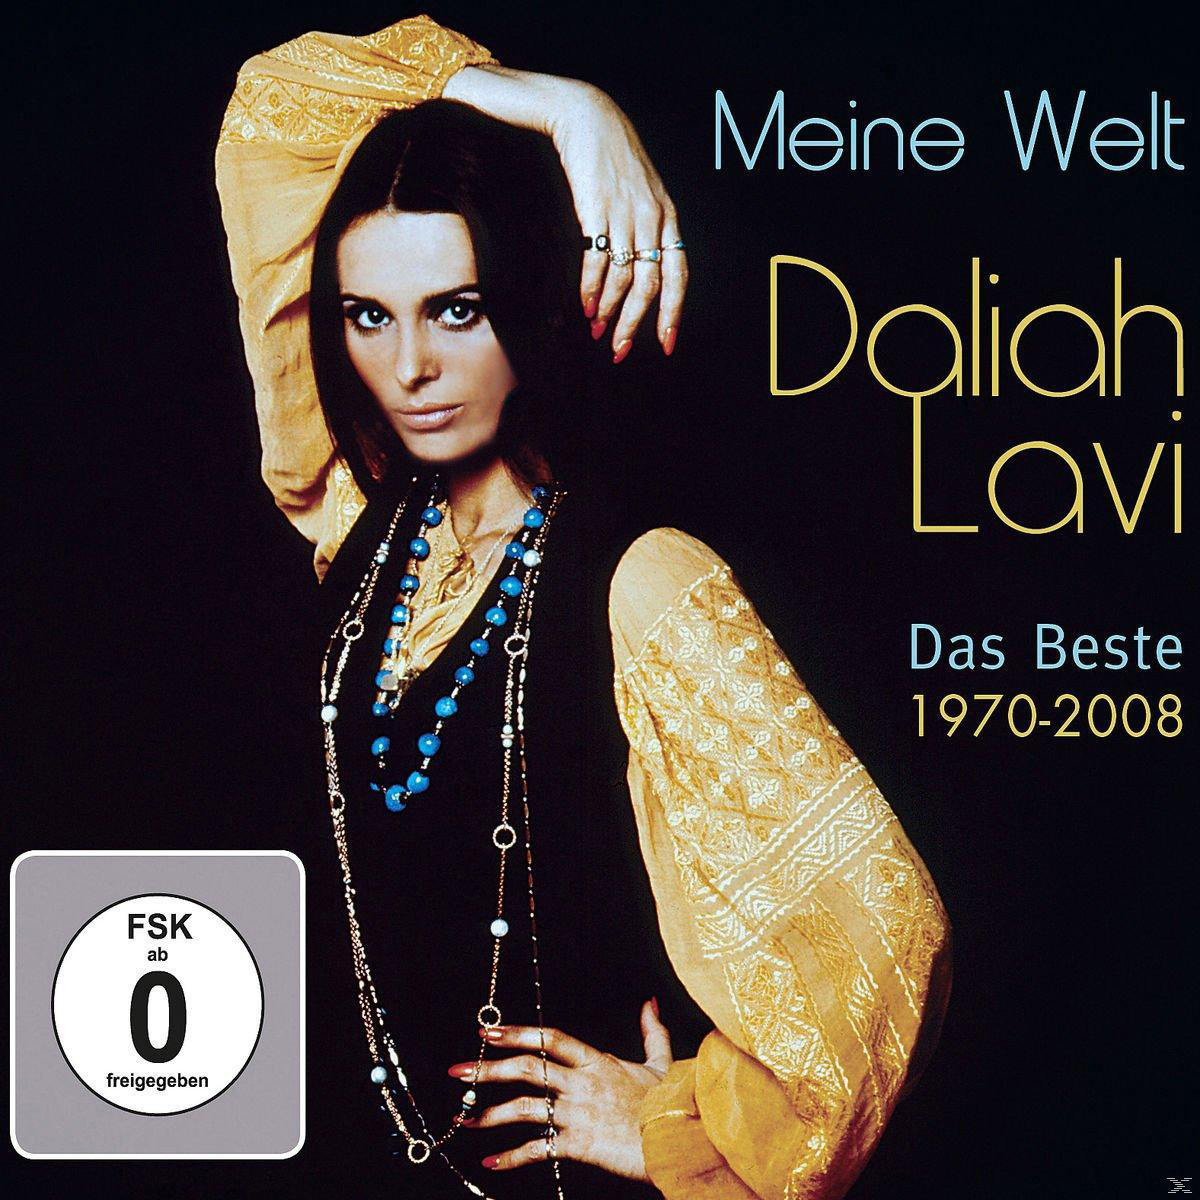 Daliah Lavi - Meine Welt Video) - Beste - DVD + (CD Das